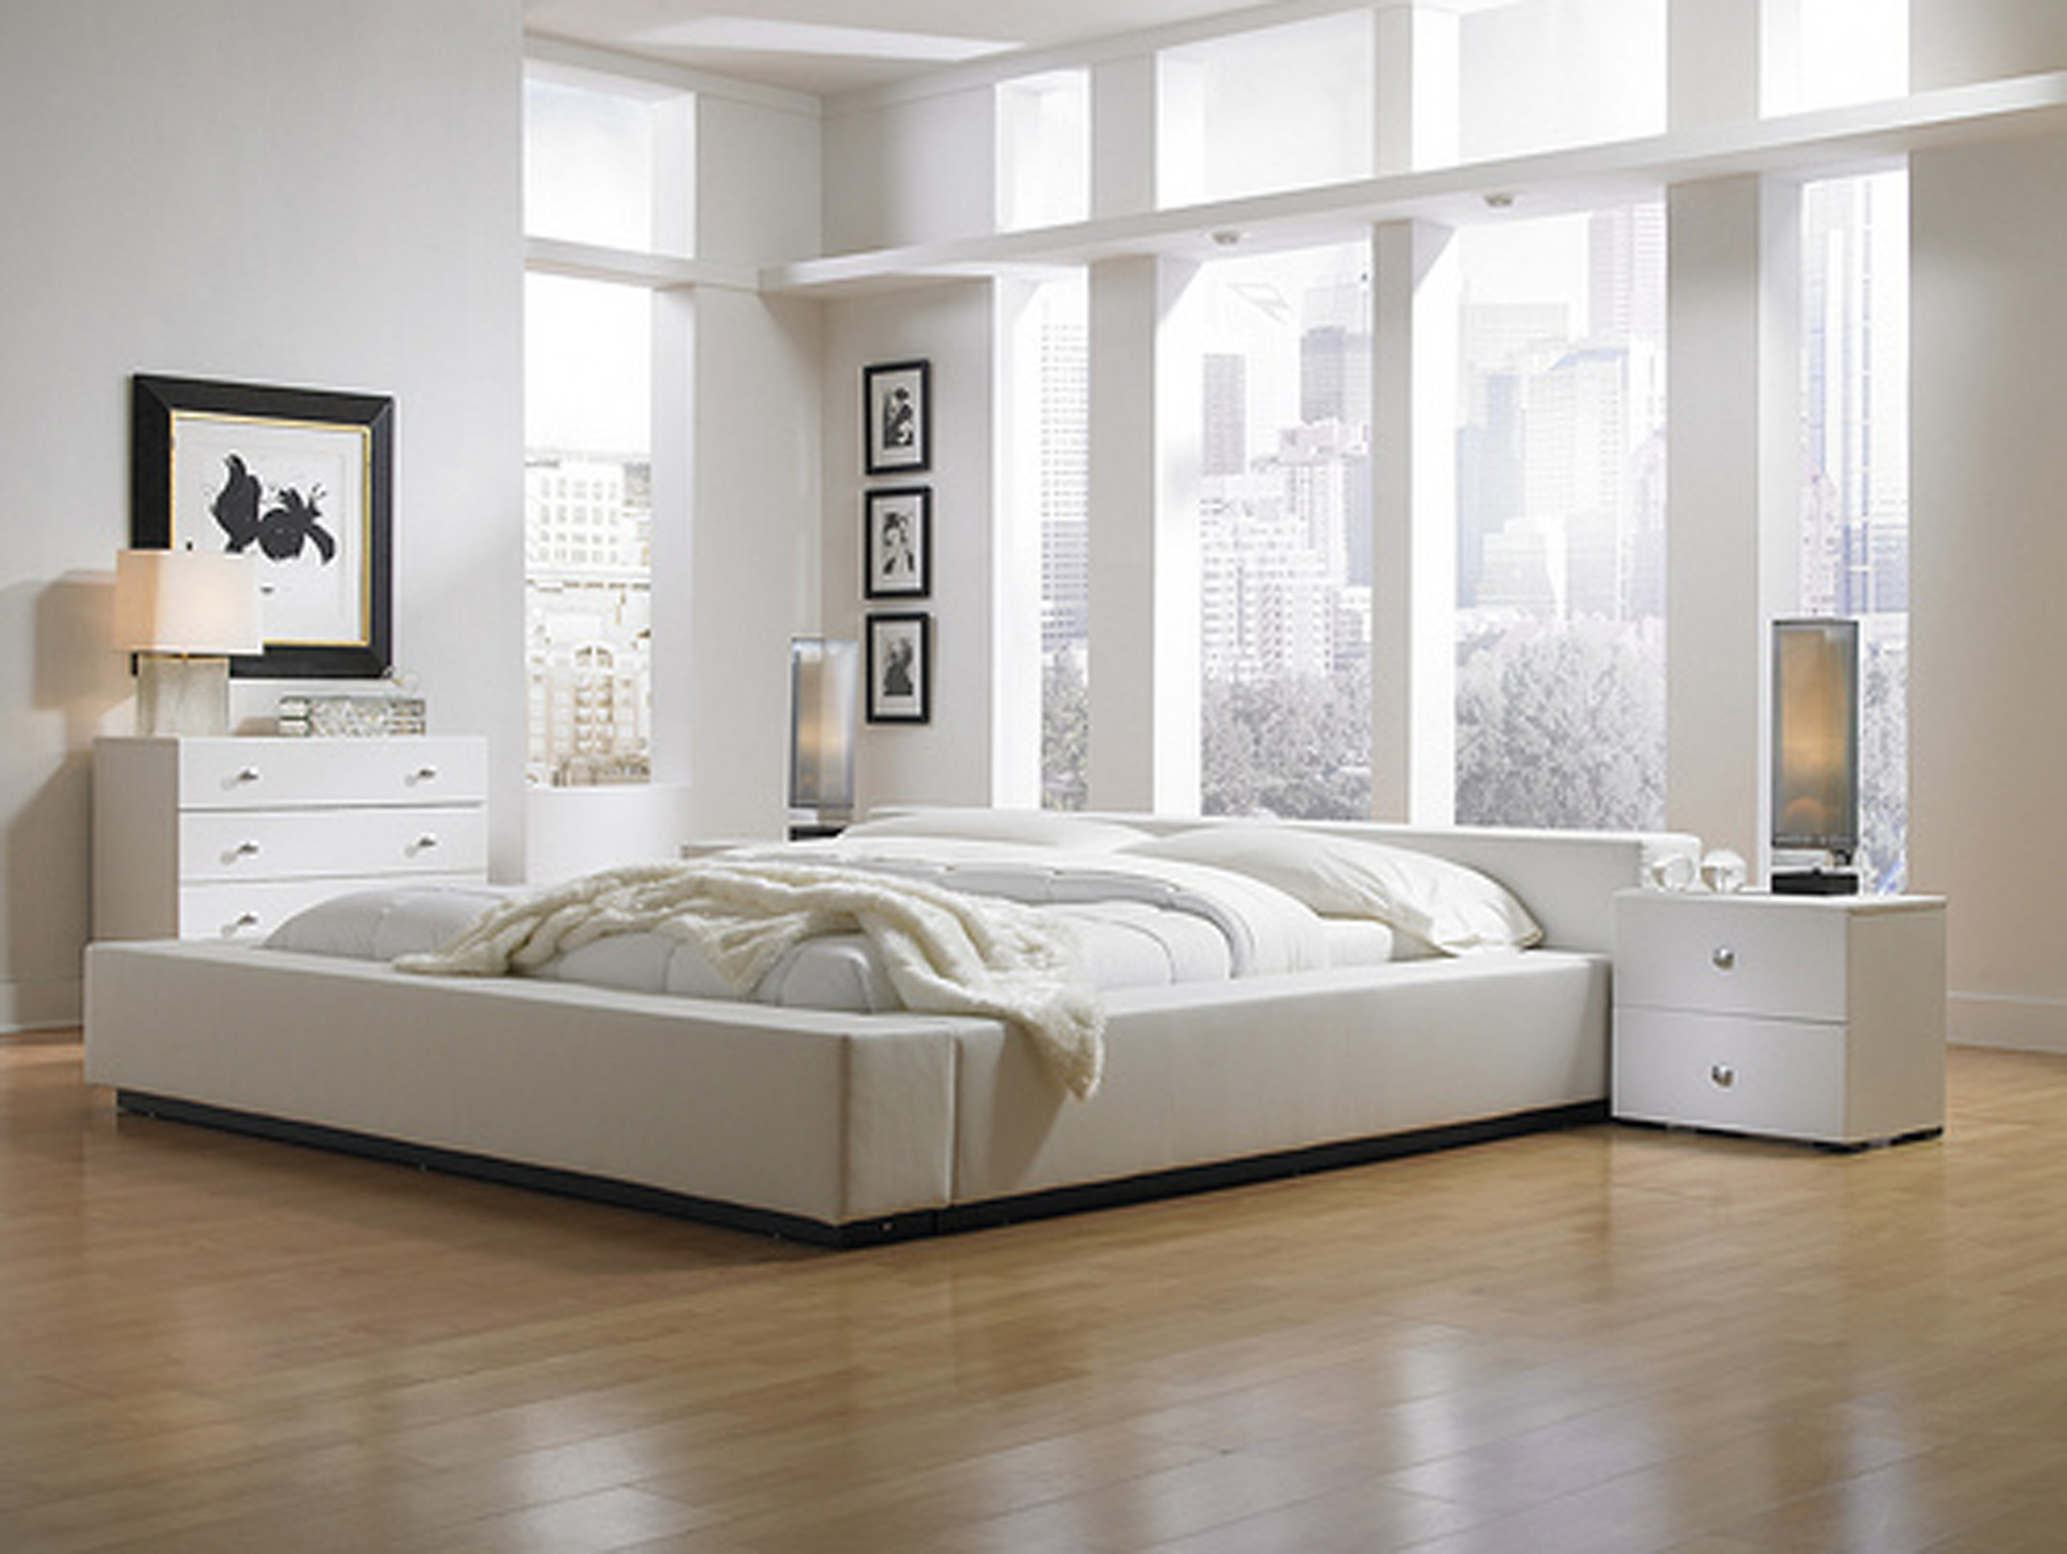 new bedroom furniture on Modern Bedroom Furniture Trend 2009